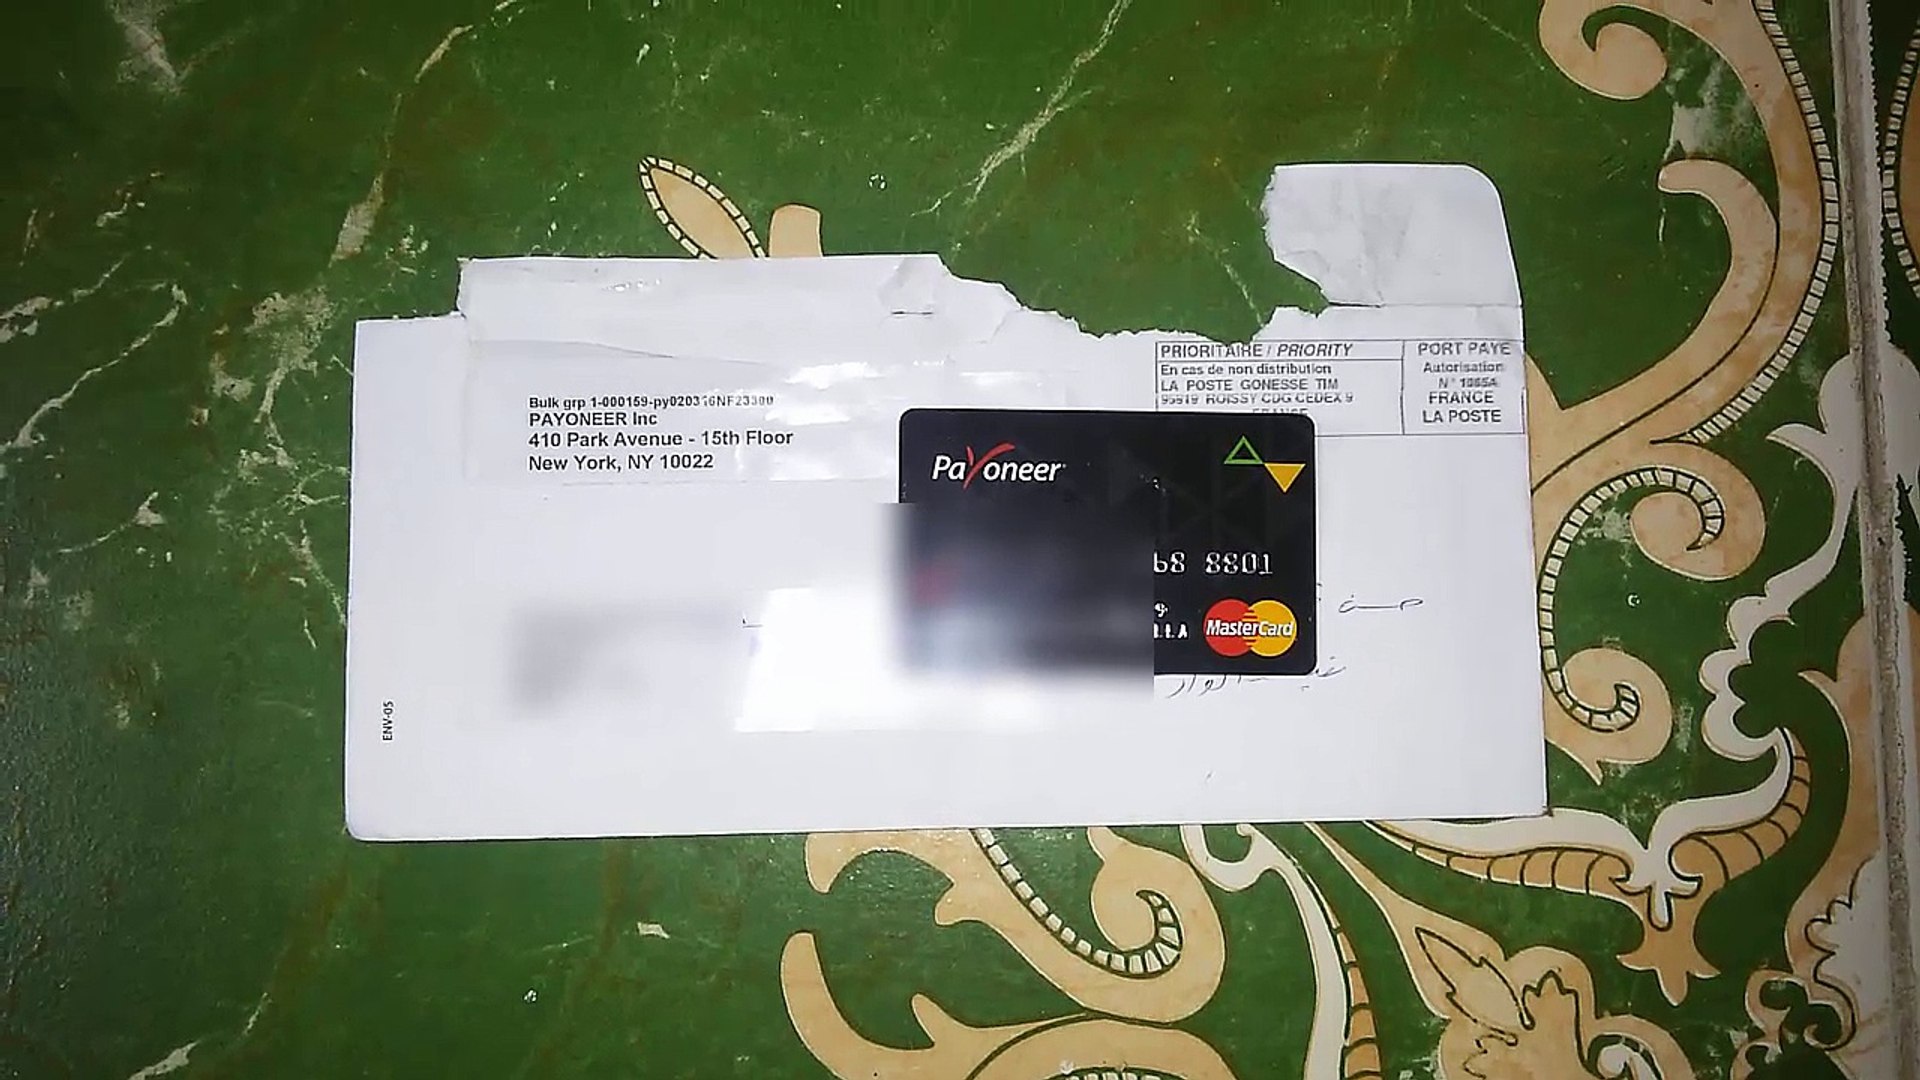 الطريقة الصحيحة لطلب بطاقة بايونير في العراق والوطن العربي وضمان وصول  البطاقه - video Dailymotion